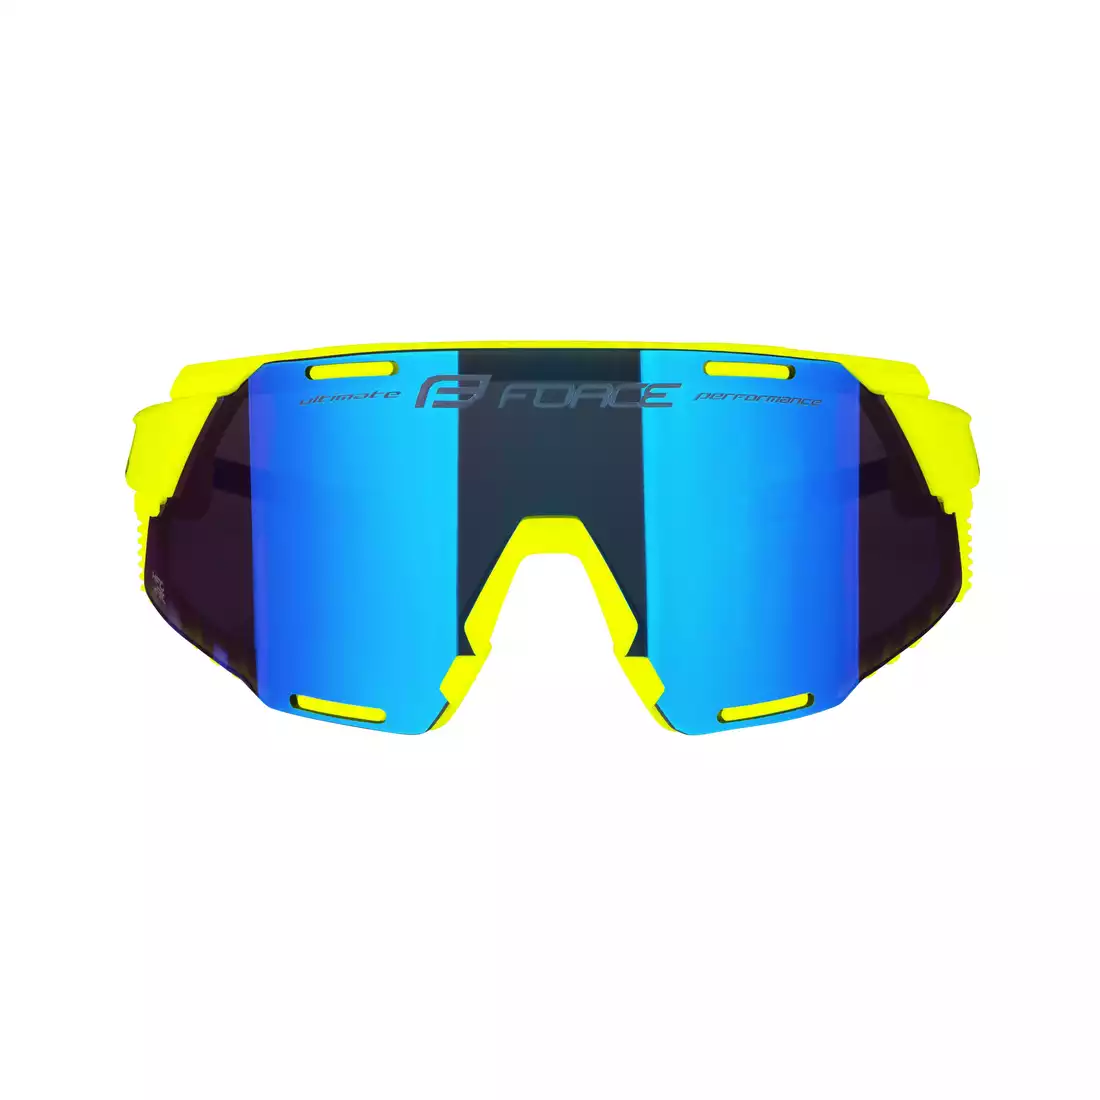 FORCE GRIP Sports glasses, blue REVO lenses, fluo 